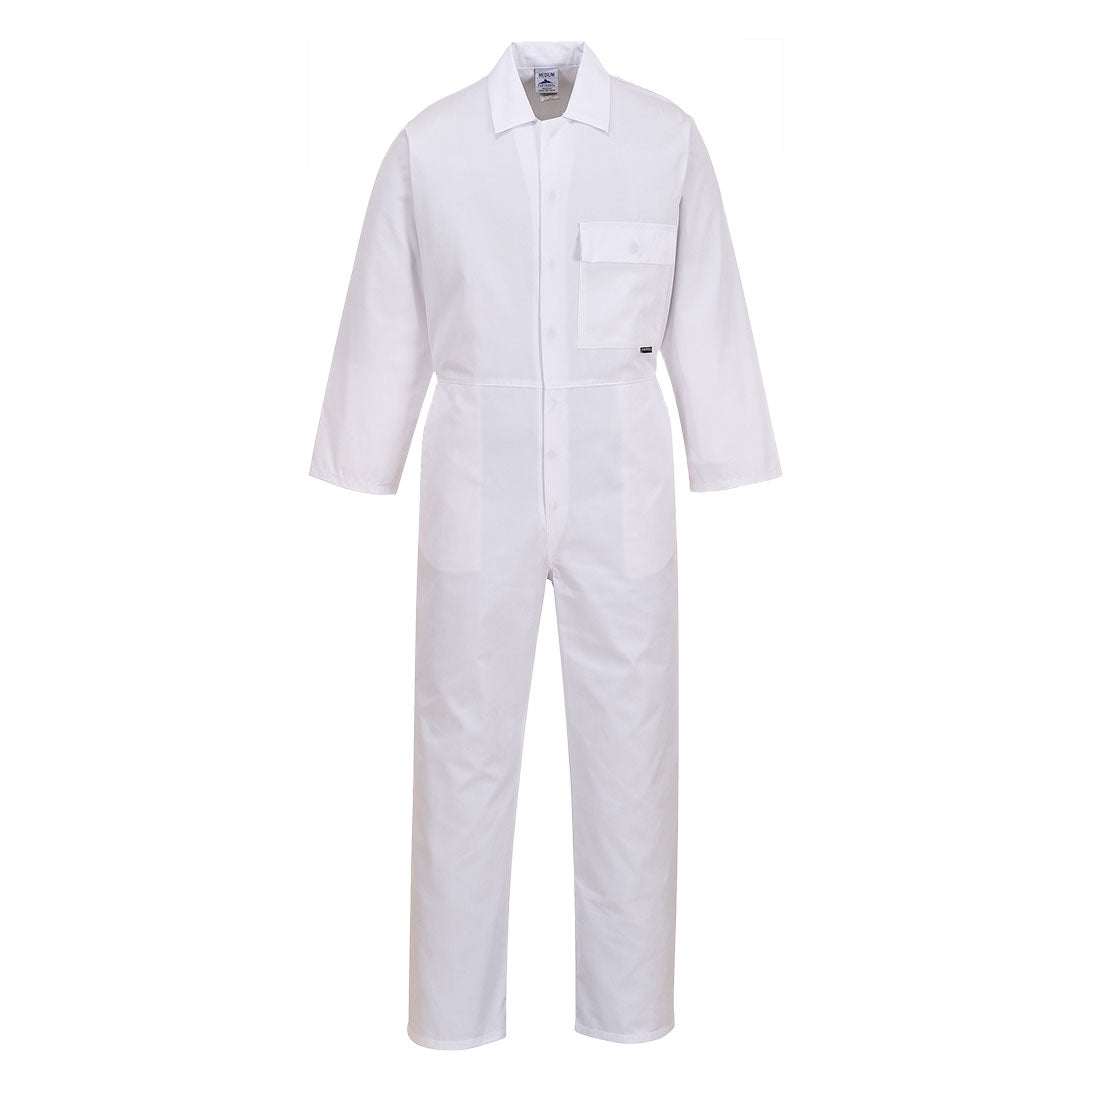 Portwest 2802 - White Standard Coverall boiler suit sz Medium Regular